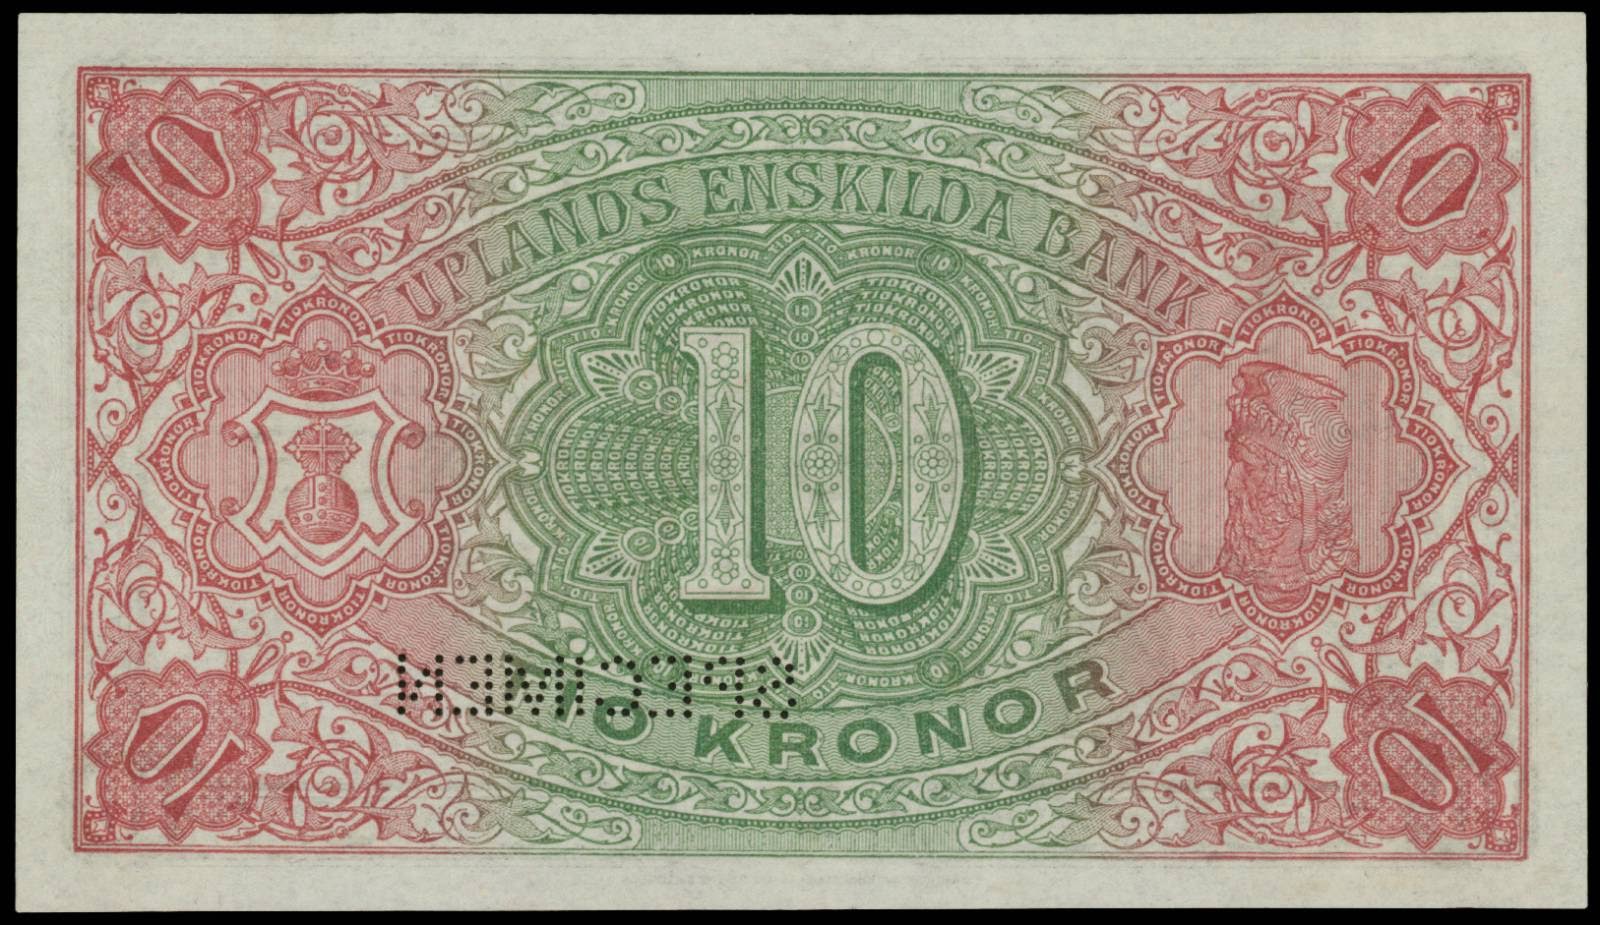 T me banknotes. Банкнота 10 бань. 10 Крон Швеция 1874 купюра. Денежные купюры Швеция с двух сторон. Фон эстонских крон.